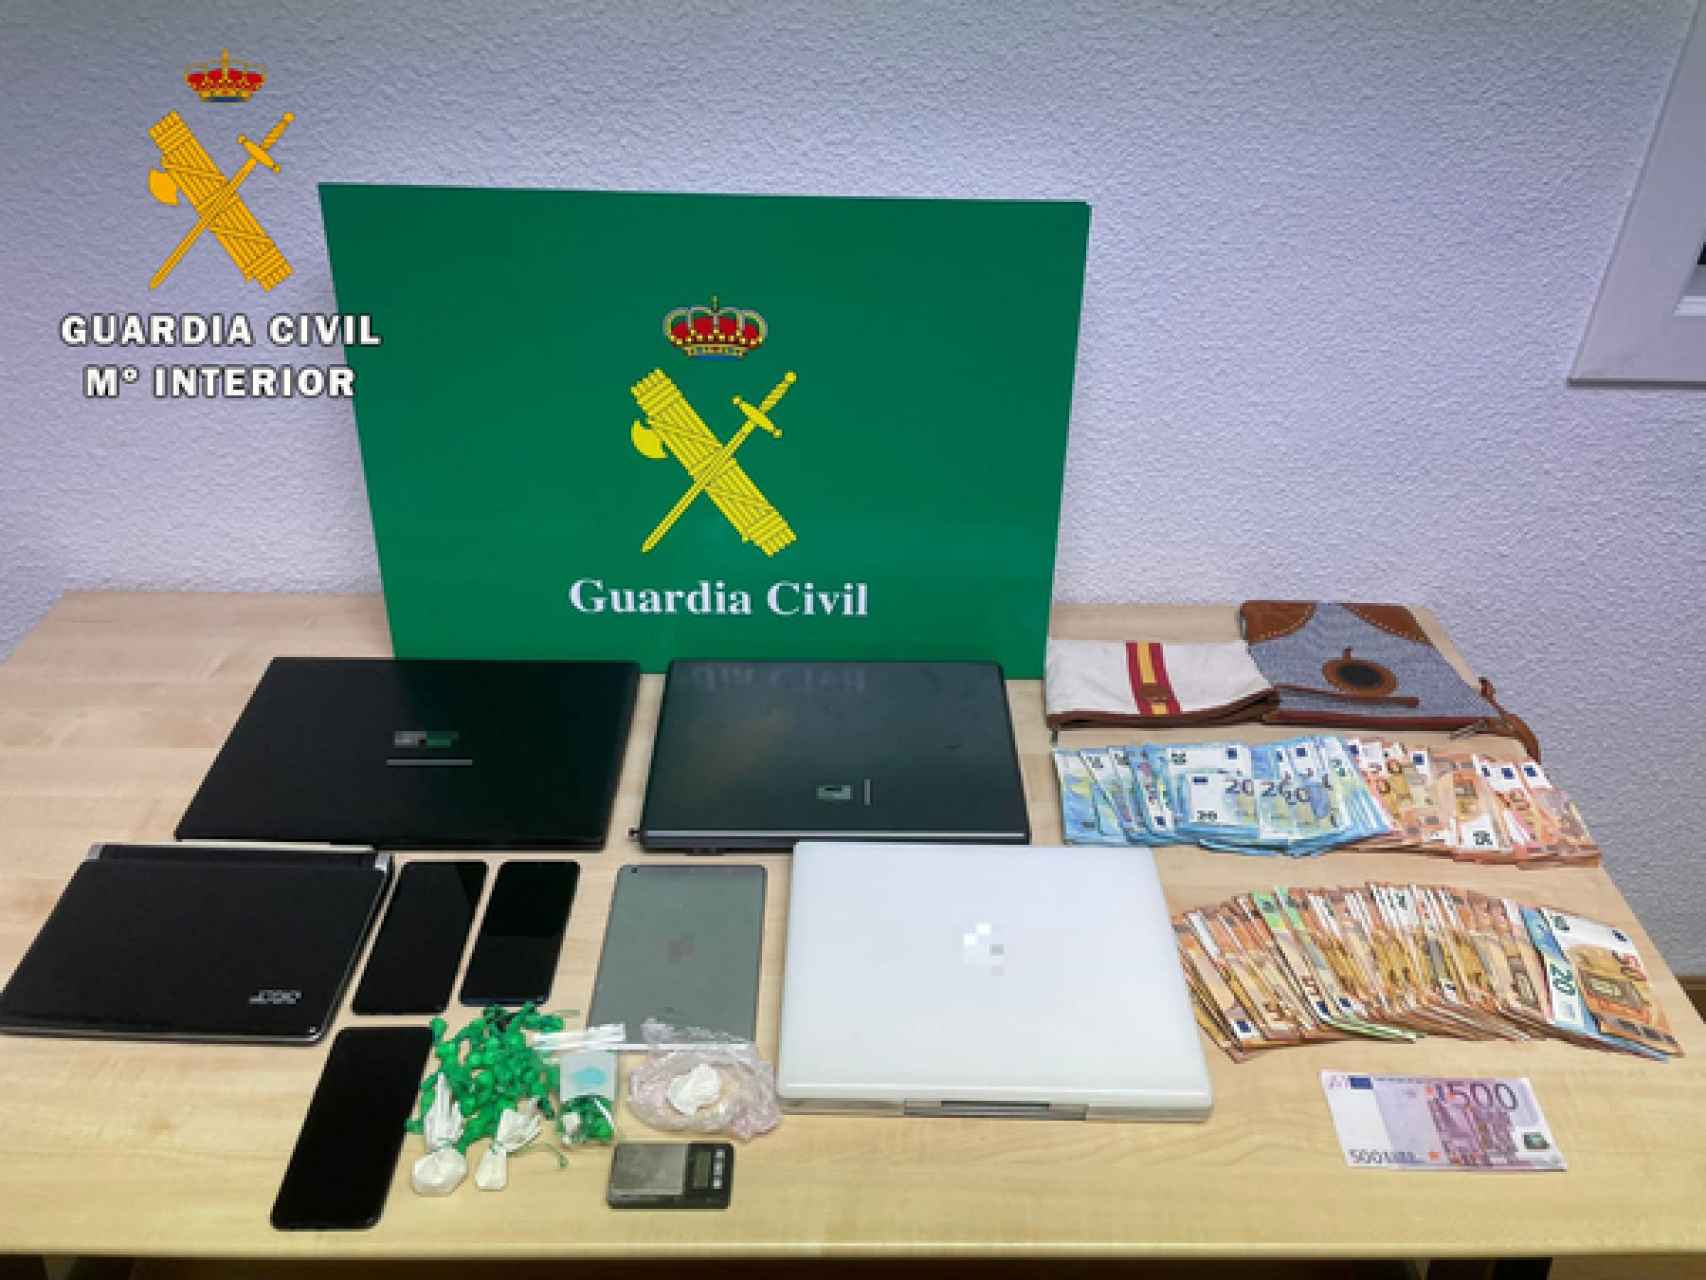 Materiales incautados durante la operación de la Guardia Civil en Arévalo